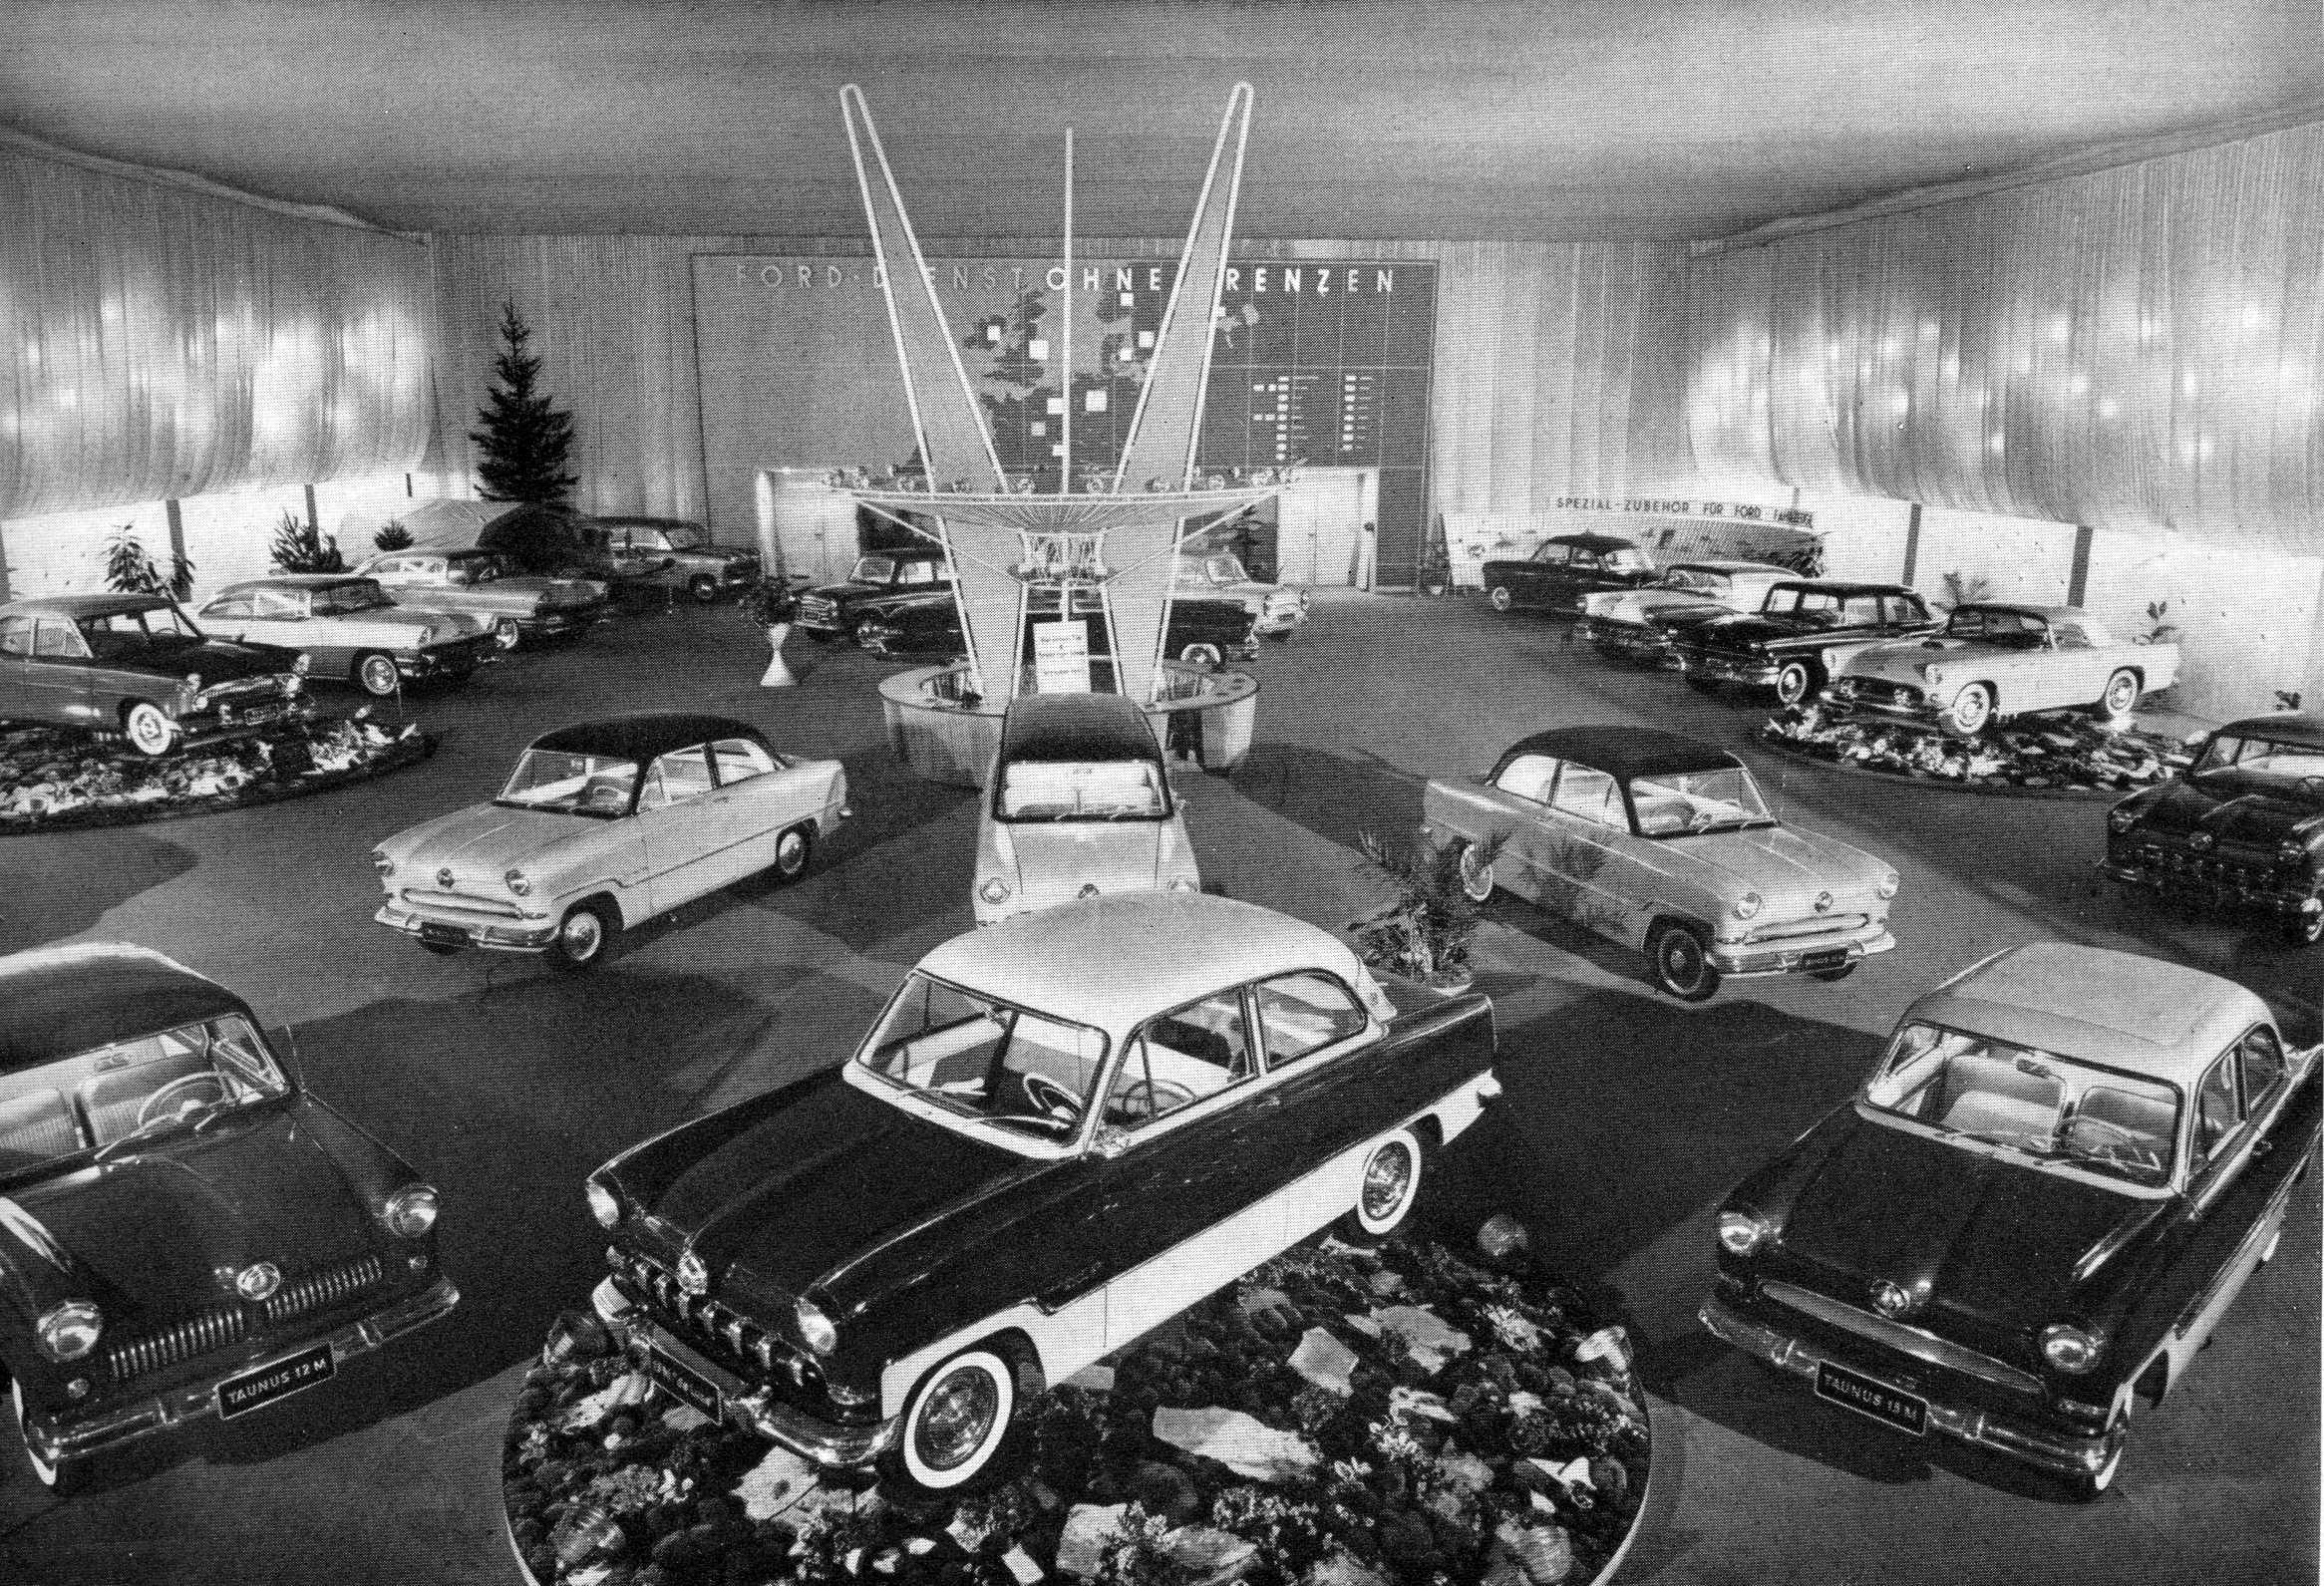 Ford Präsentation auf der IAA 1955 in Frankfurt/Main